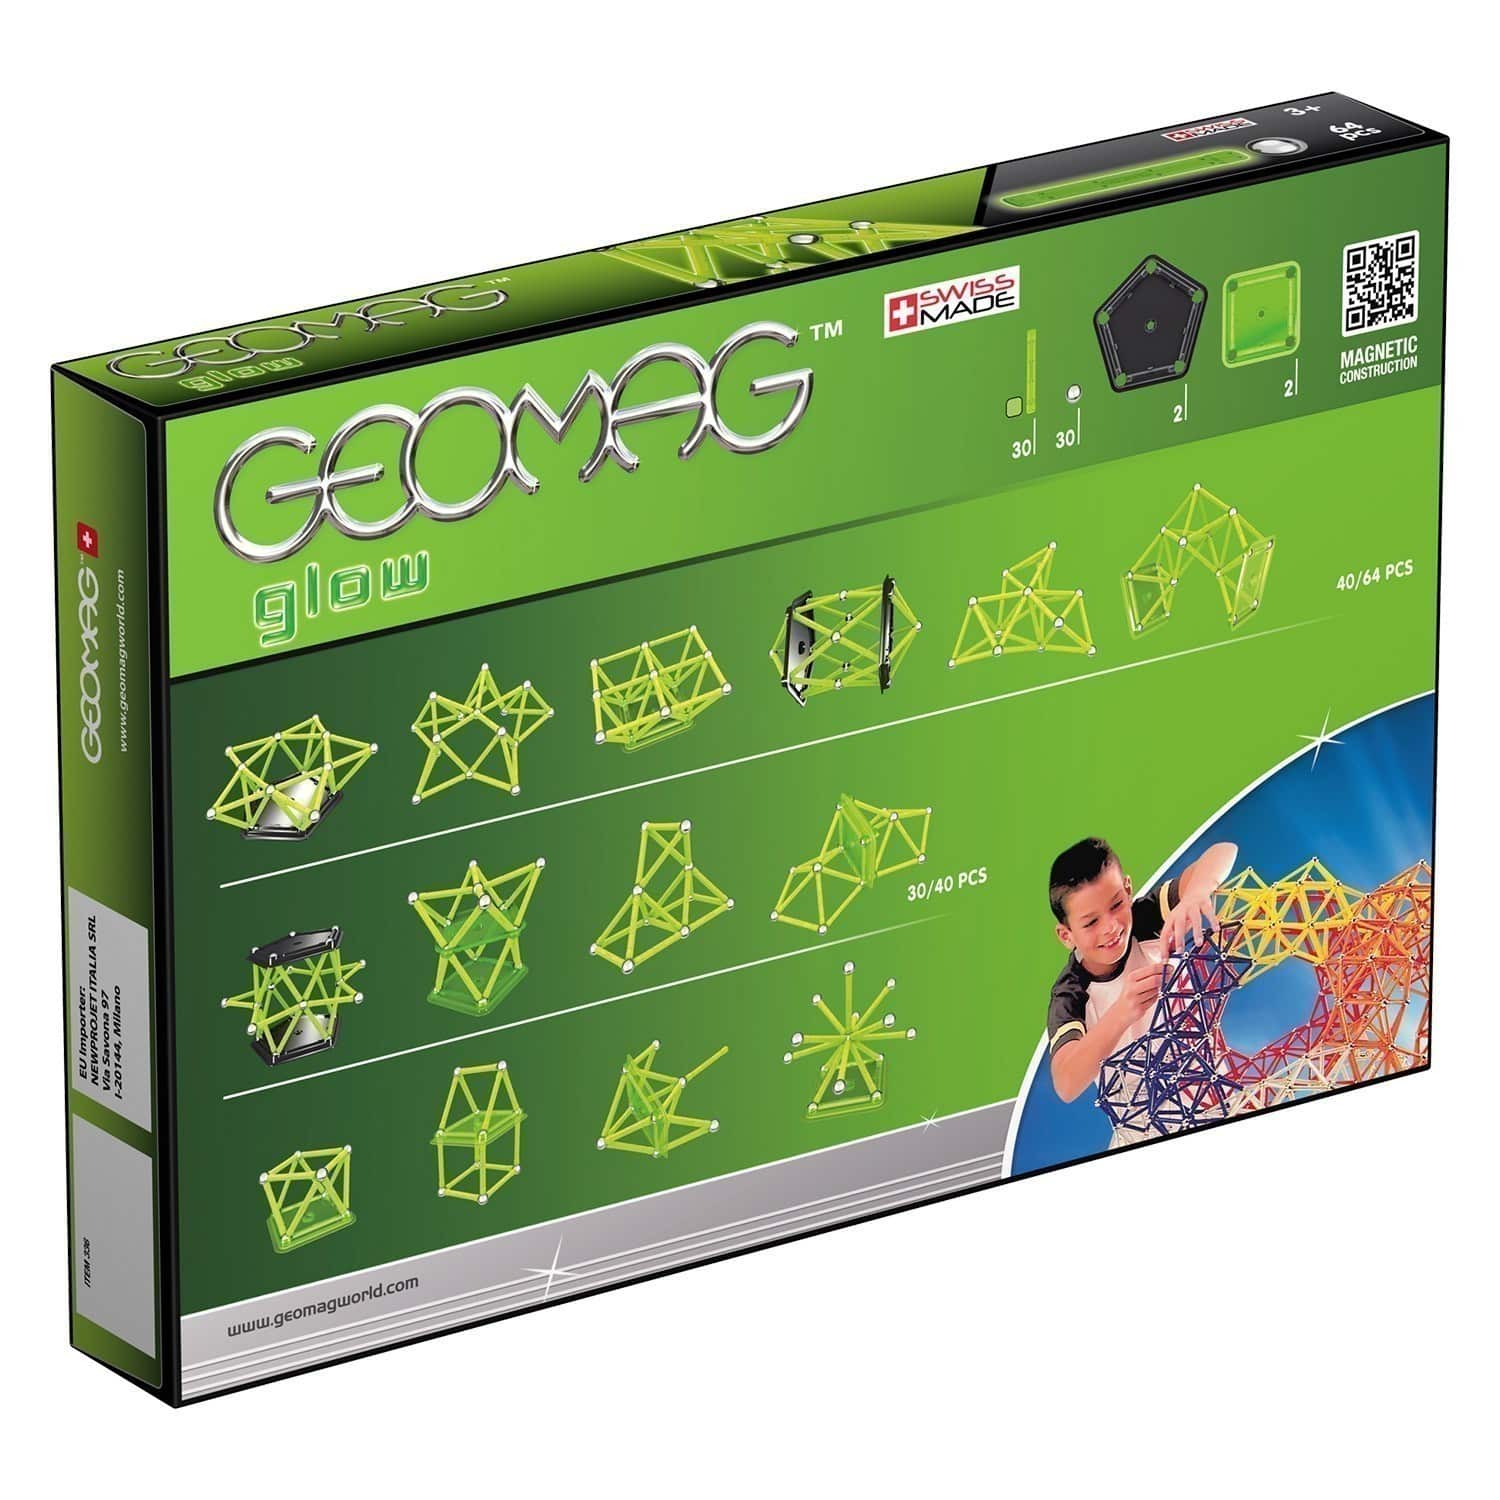 Geomag - Glow 64 Piece